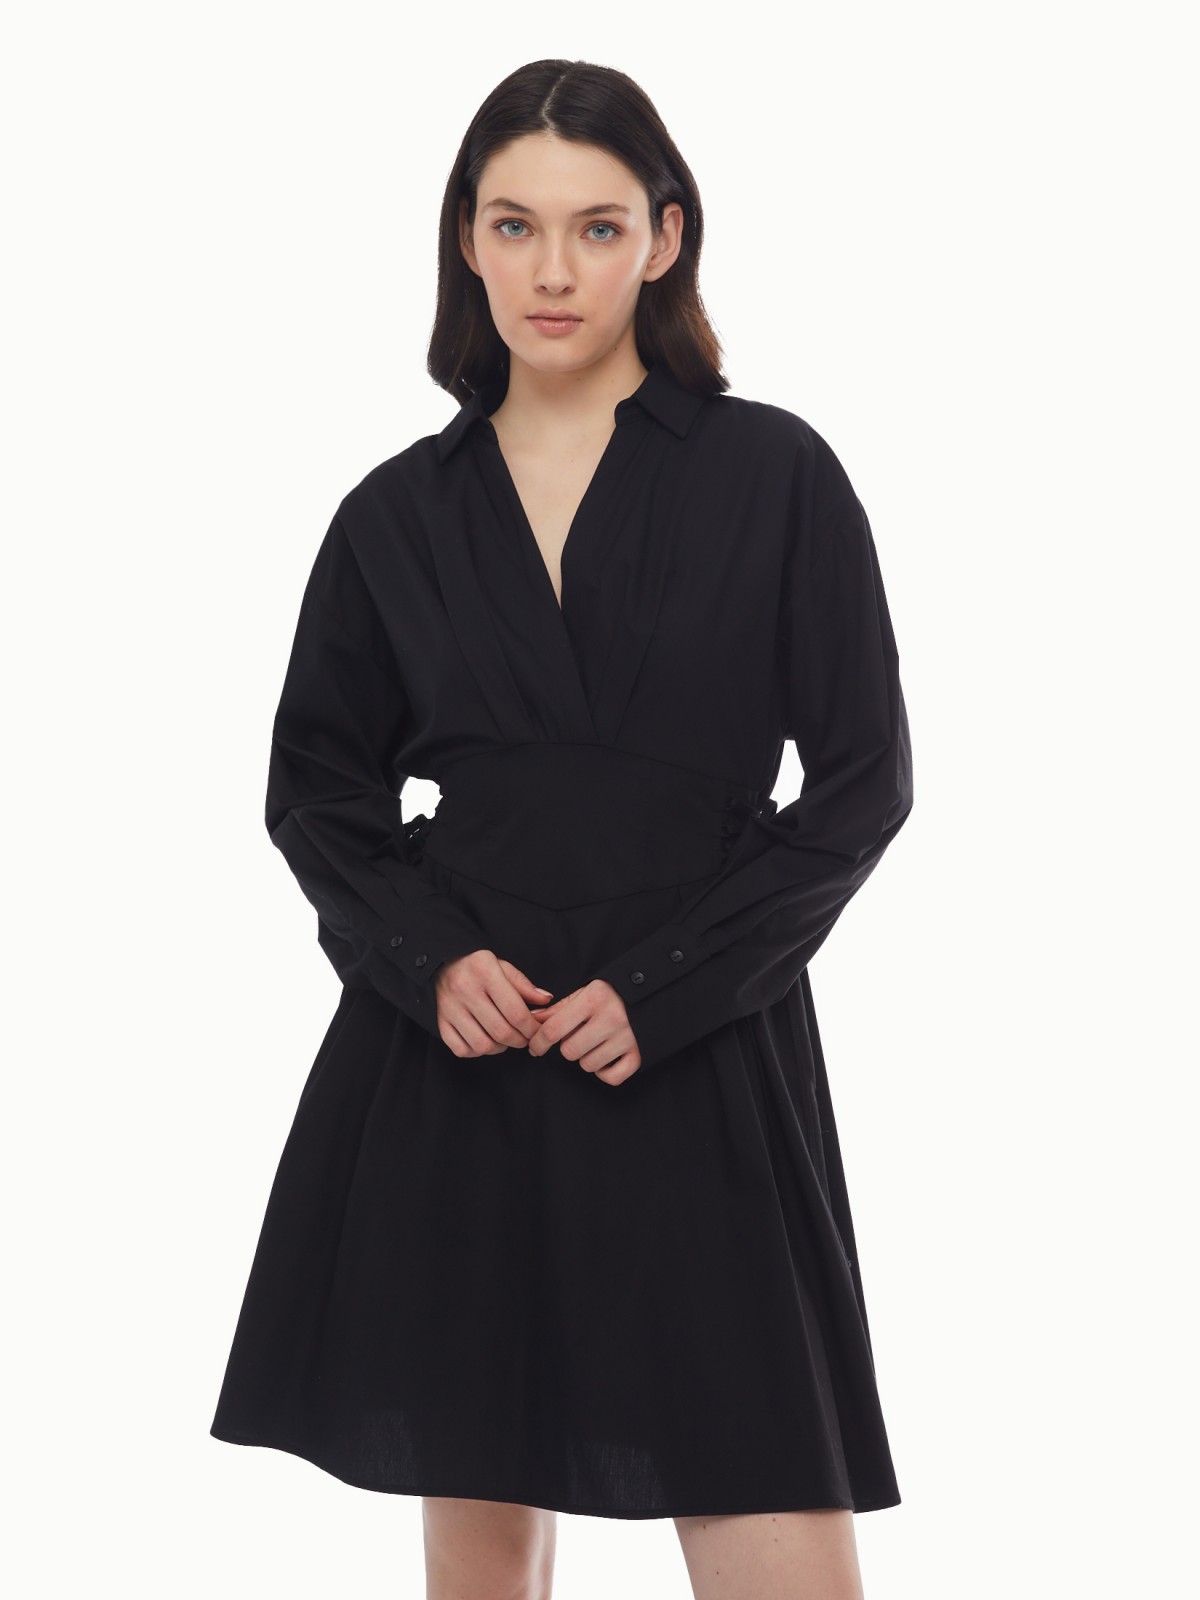 Платье длины мини из хлопка со шнуровкой на талии zolla 024138239291, цвет черный, размер XS - фото 1